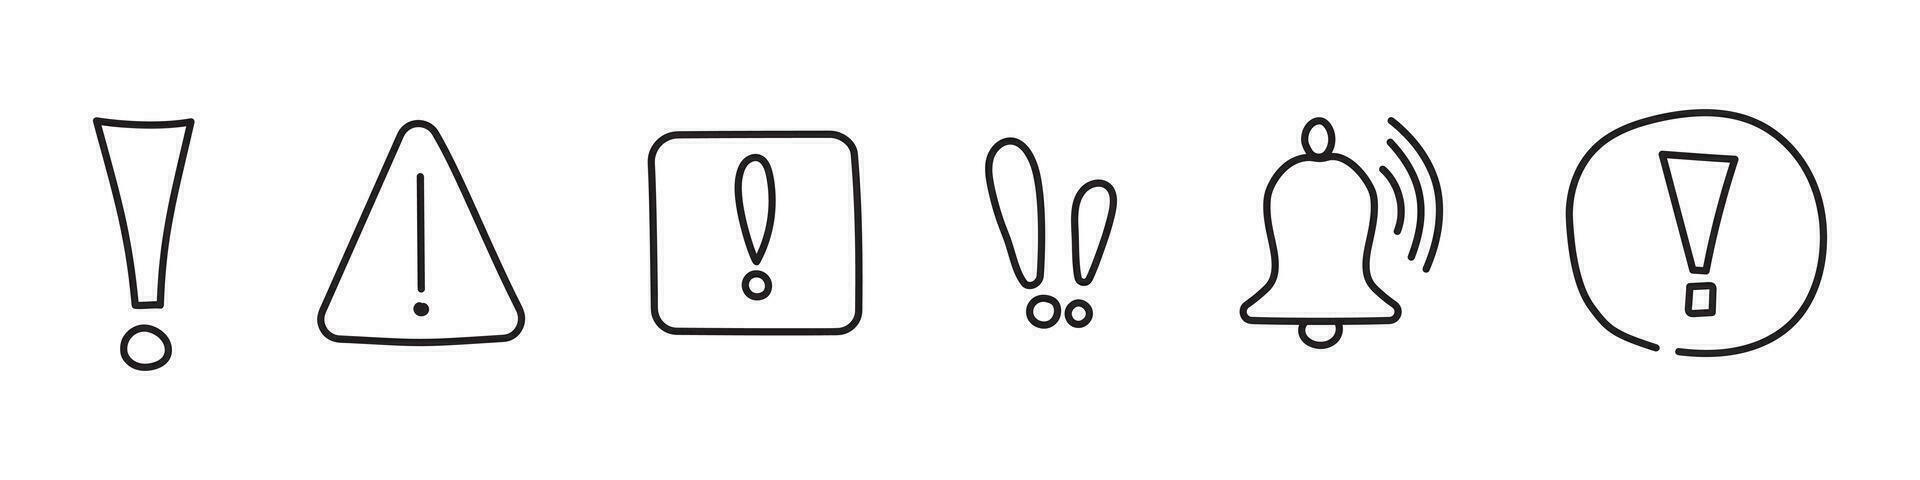 simples conjunto do mão desenhado advertências relacionado vetor linha ícones. contém tal ícones Como alerta, exclamação marca, Atenção placa. rabisco símbolo.